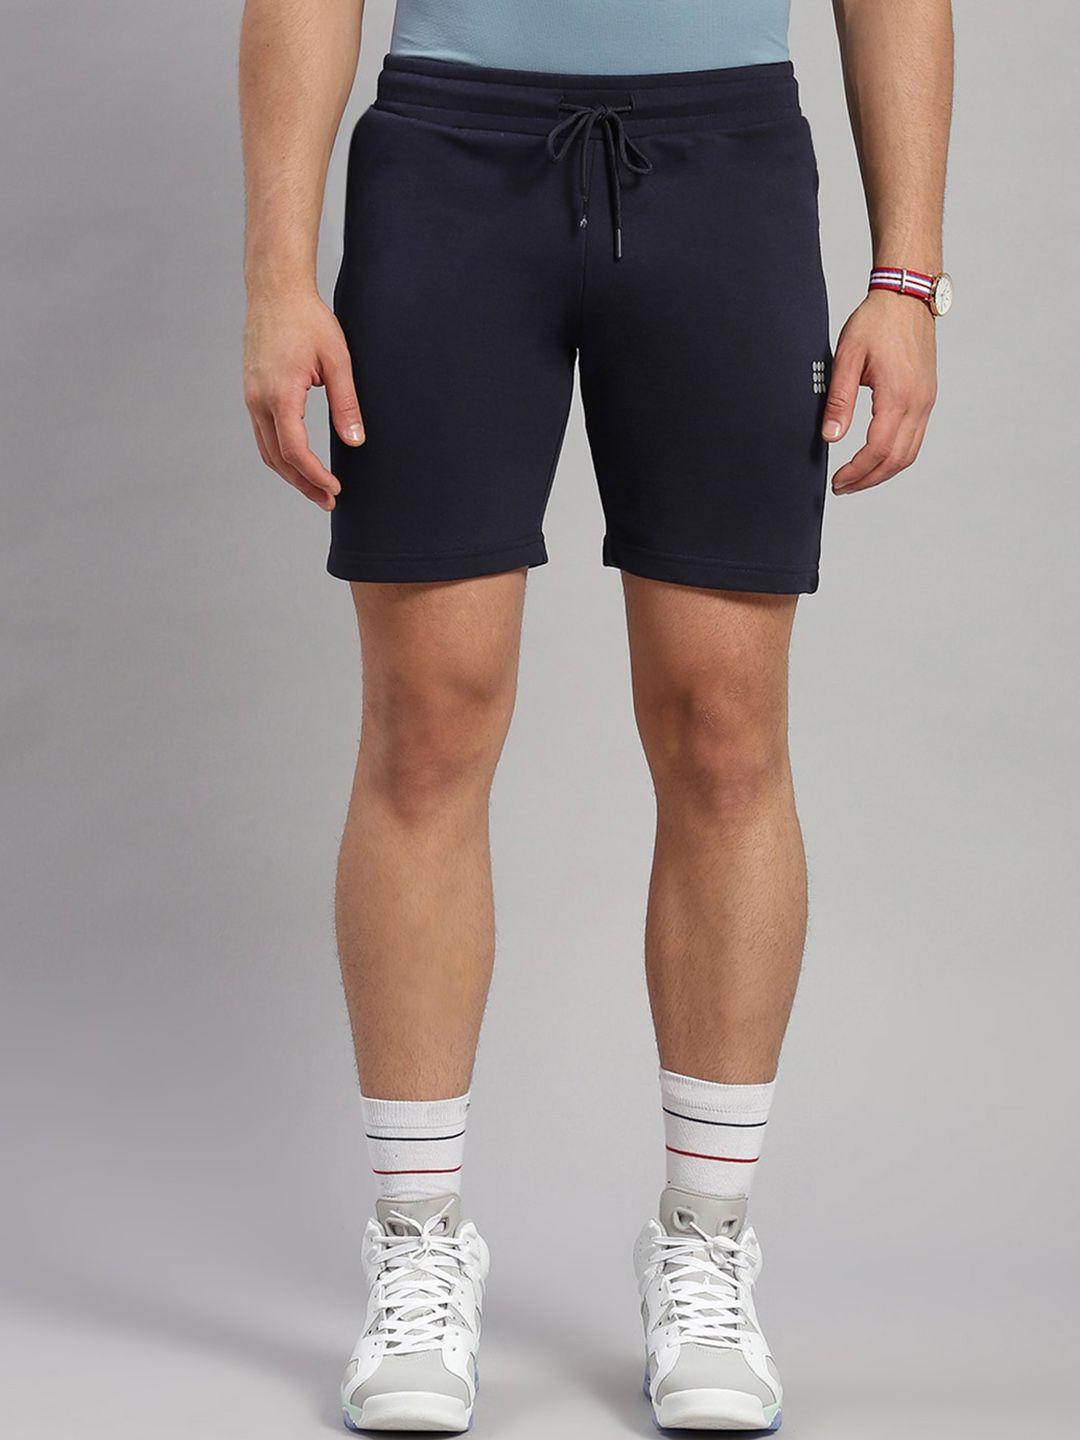 rock.it men mid rise slim fit cotton sports shorts